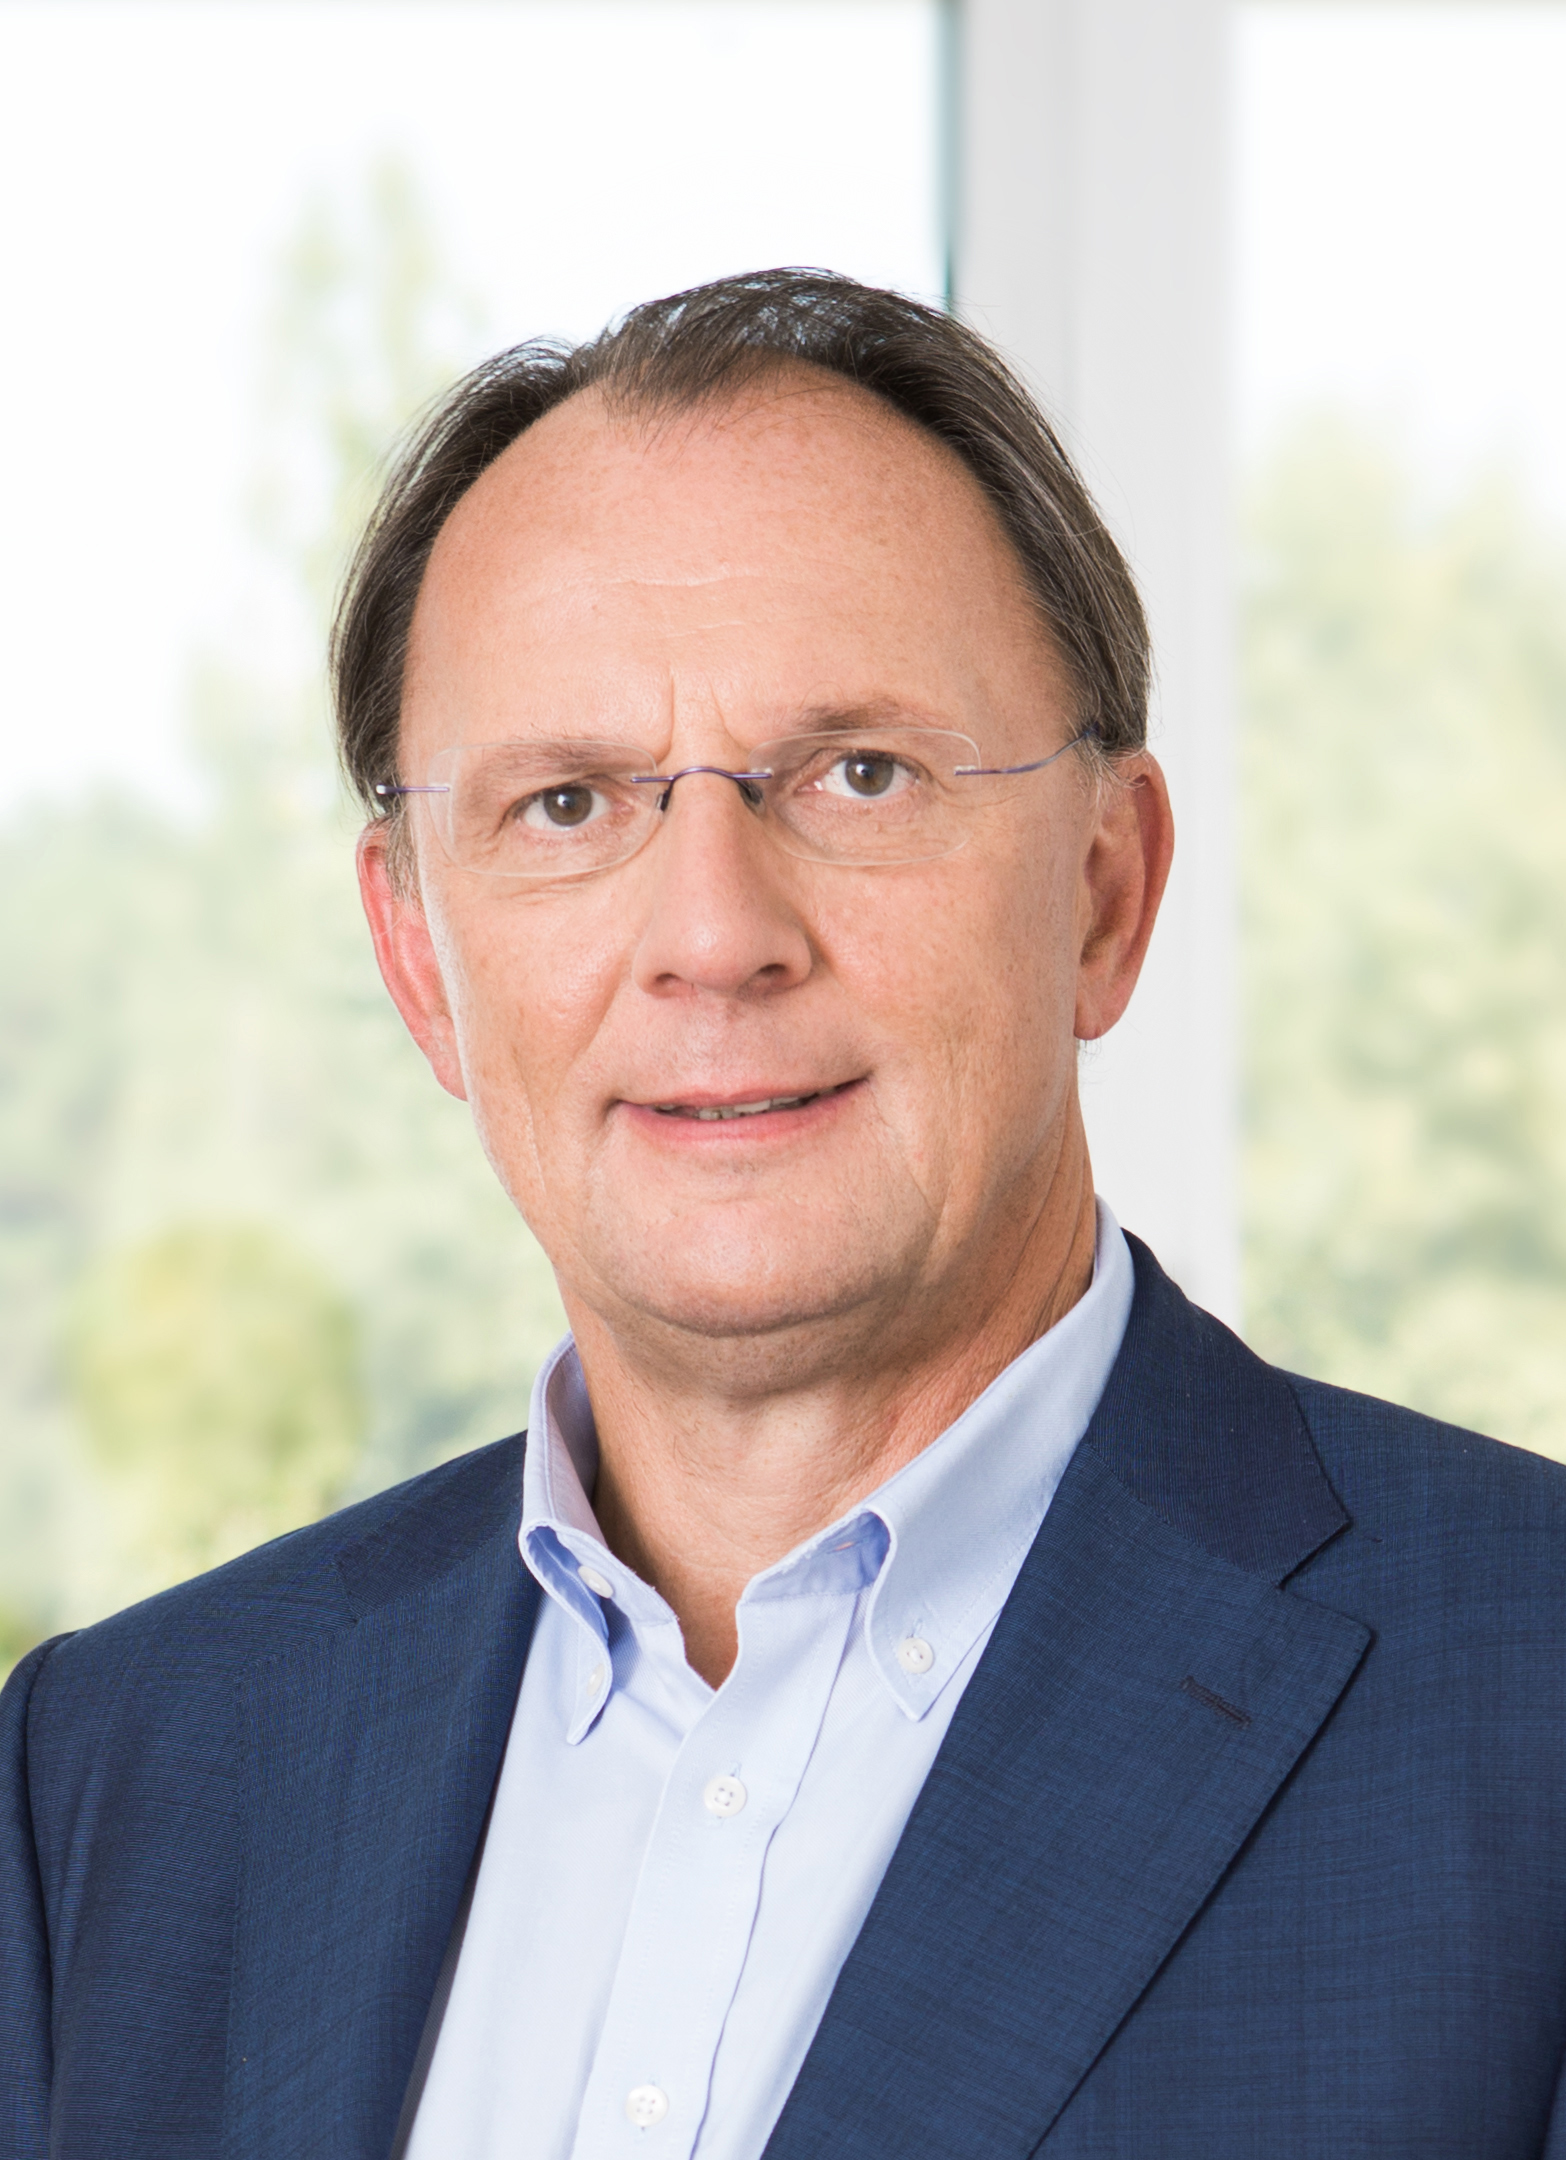 R. Pfarrwaller, CEO, Rexel Austria